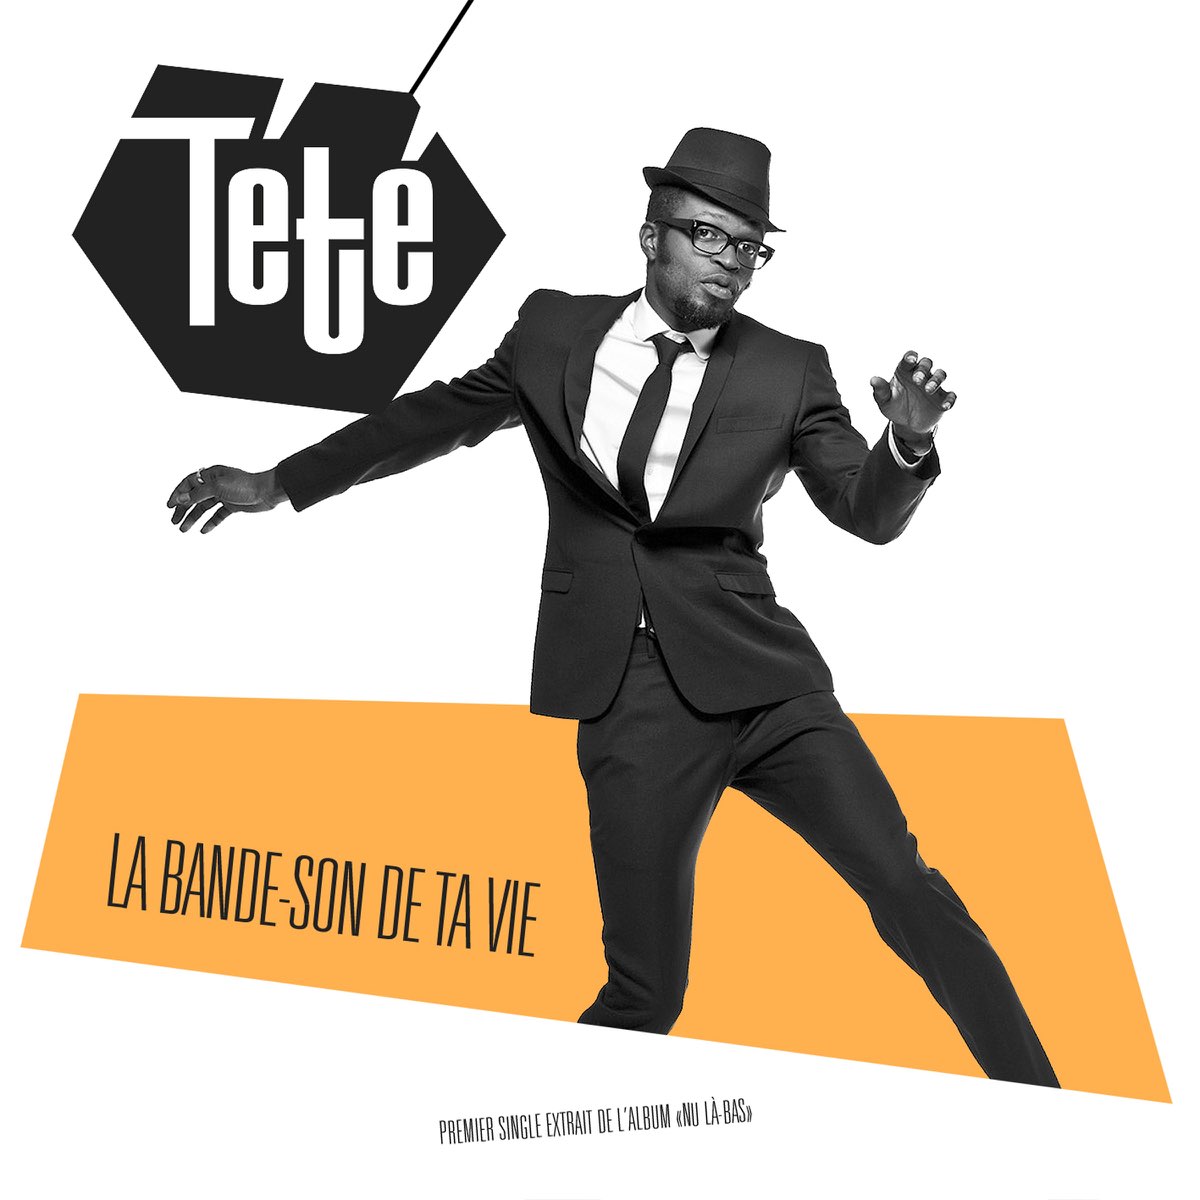 La bande son de ta vie - Single by Tété on Apple Music